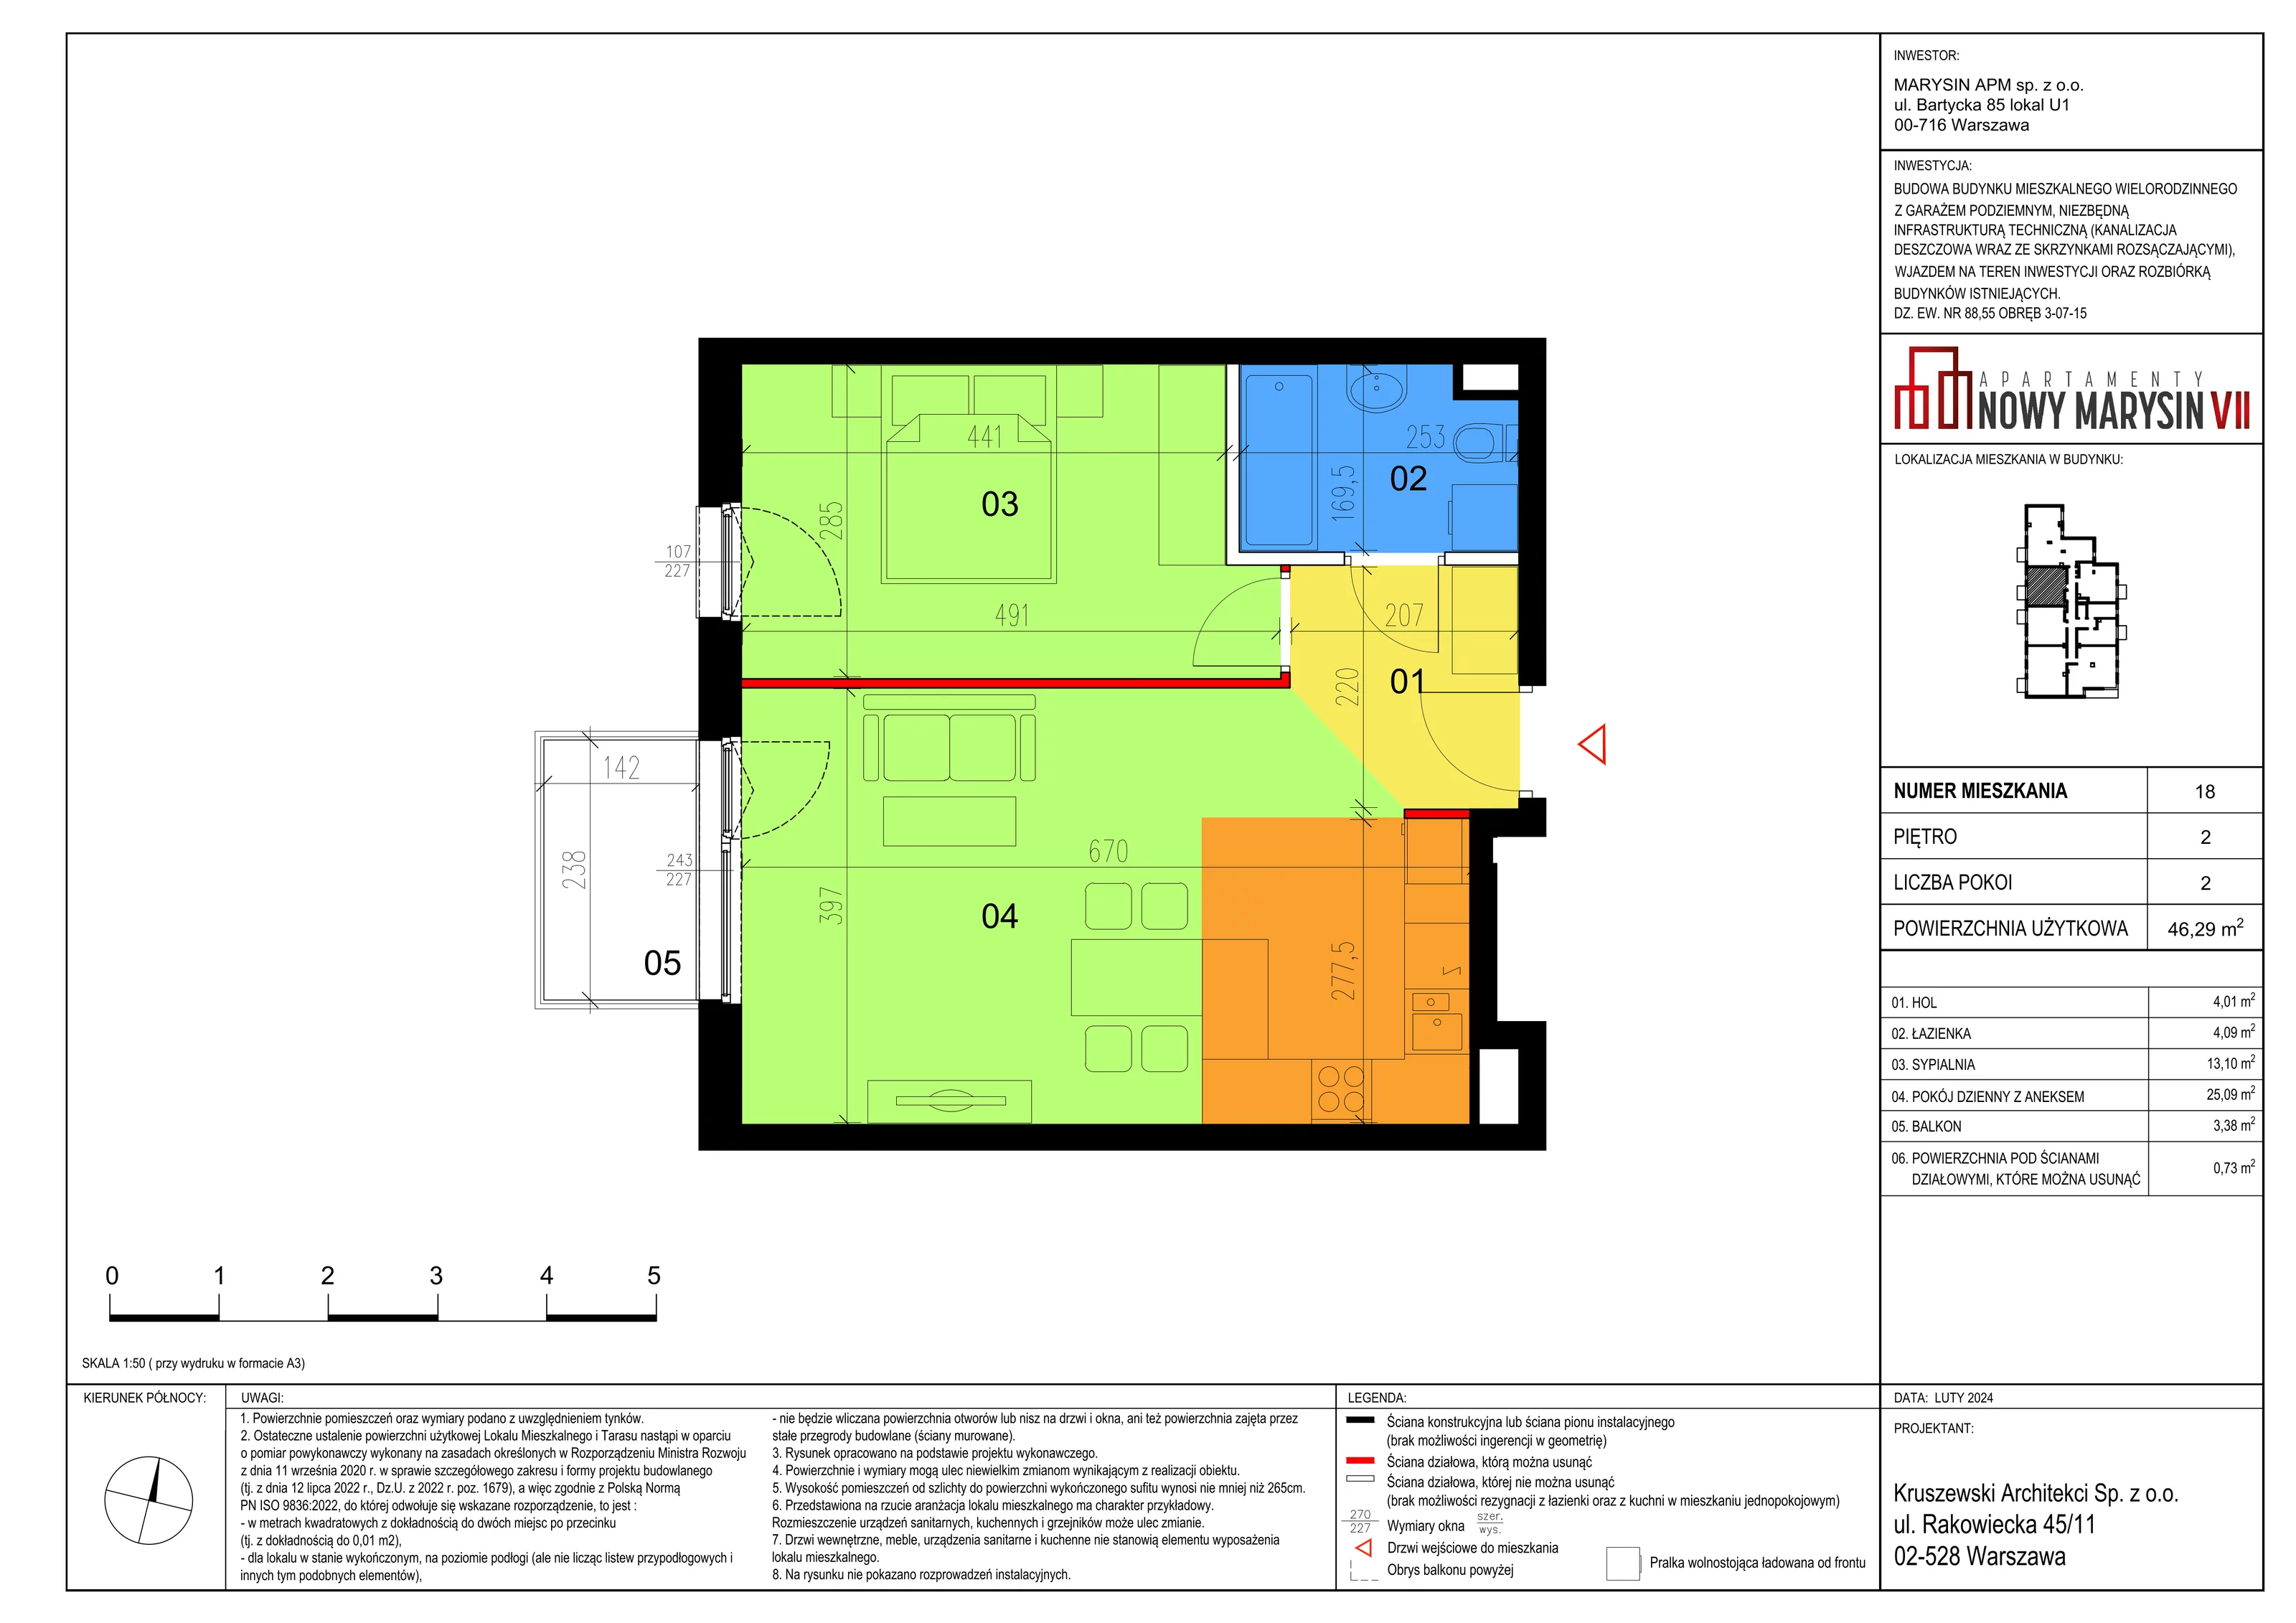 Mieszkanie 46,29 m², piętro 2, oferta nr VII_18, Apartamenty Marysin, Warszawa, Wawer, Marysin Wawerski, ul. Bluszczowa 14